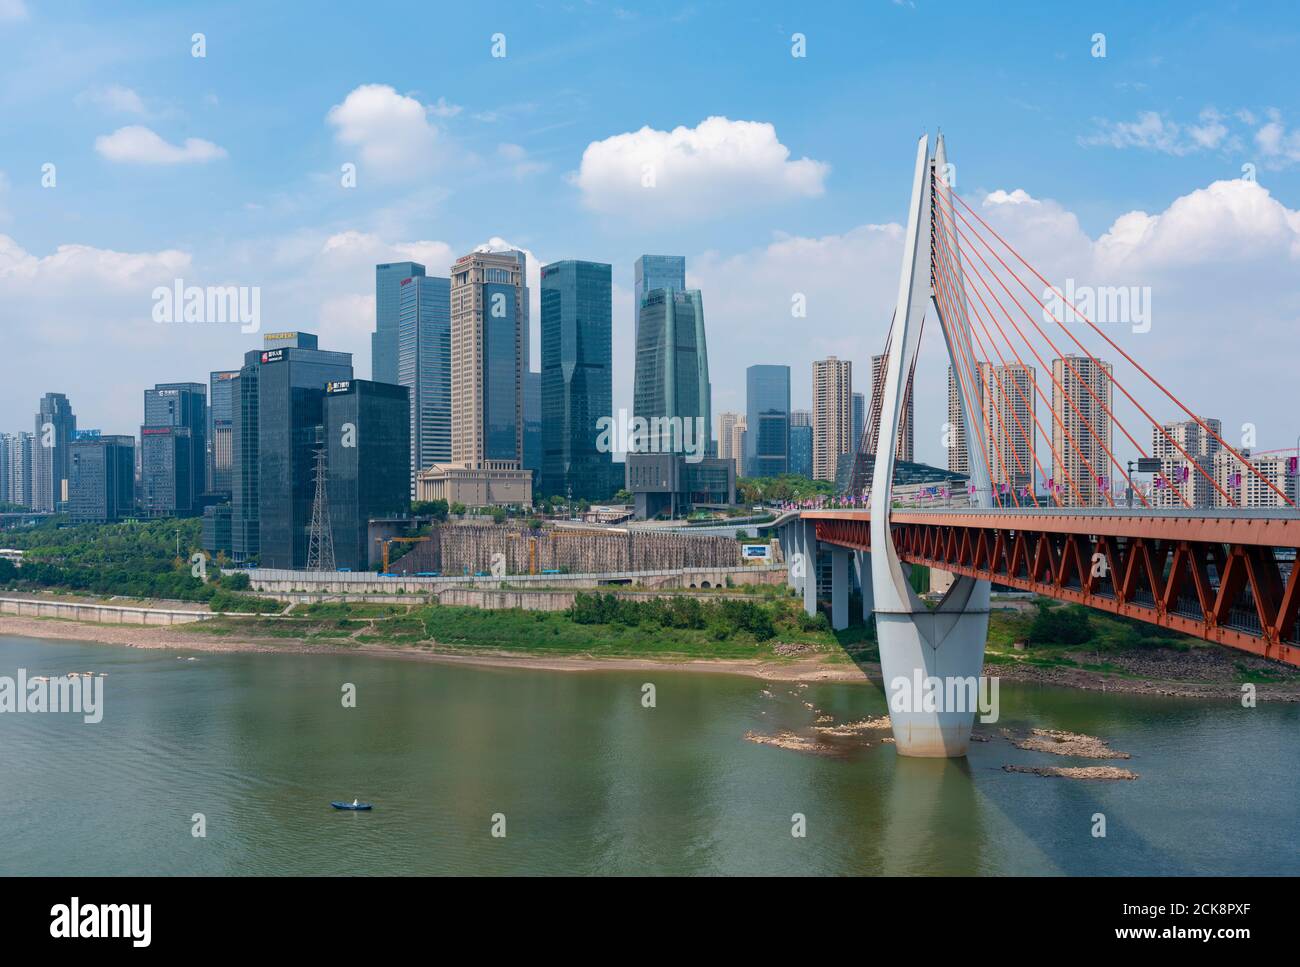 Le disctrict financier de la ville de Chongqing en Chine Banque D'Images